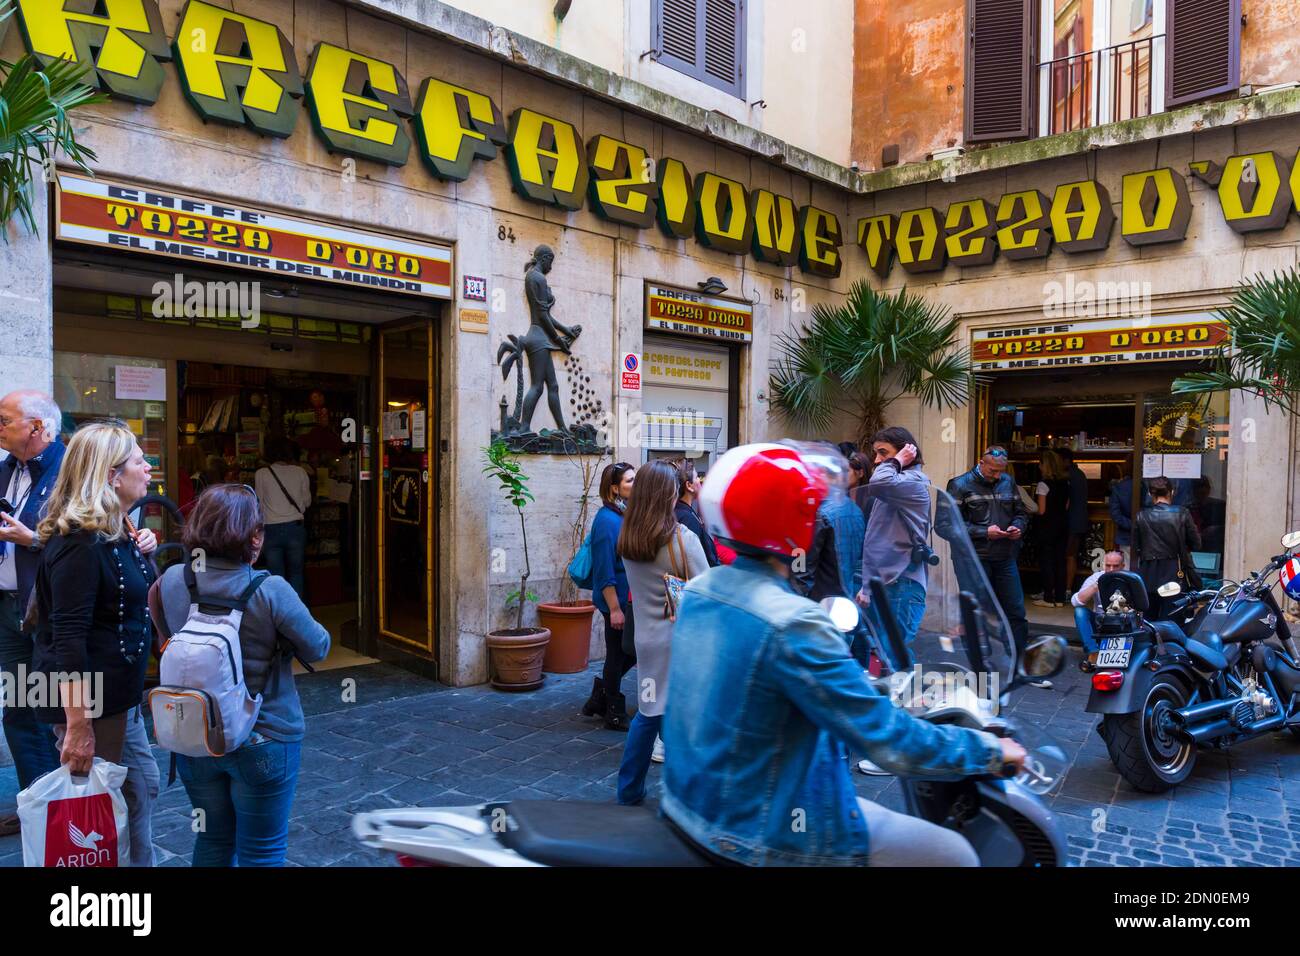 Coffee Shop, Piazza della Rotonda, Rome, Italy, Europe Stock Photo